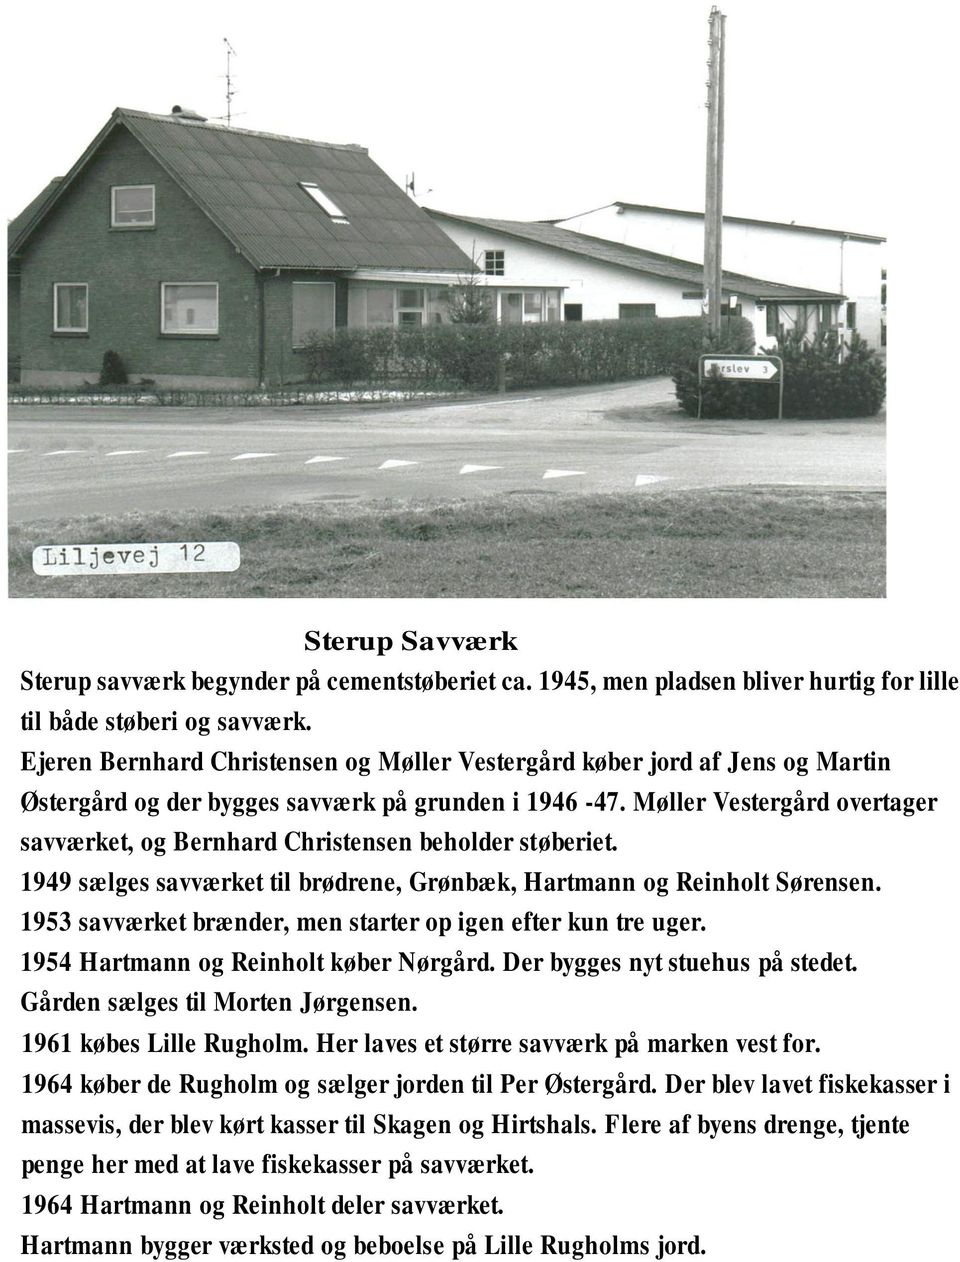 Møller Vestergård overtager savværket, og Bernhard Christensen beholder støberiet. 1949 sælges savværket til brødrene, Grønbæk, Hartmann og Reinholt Sørensen.